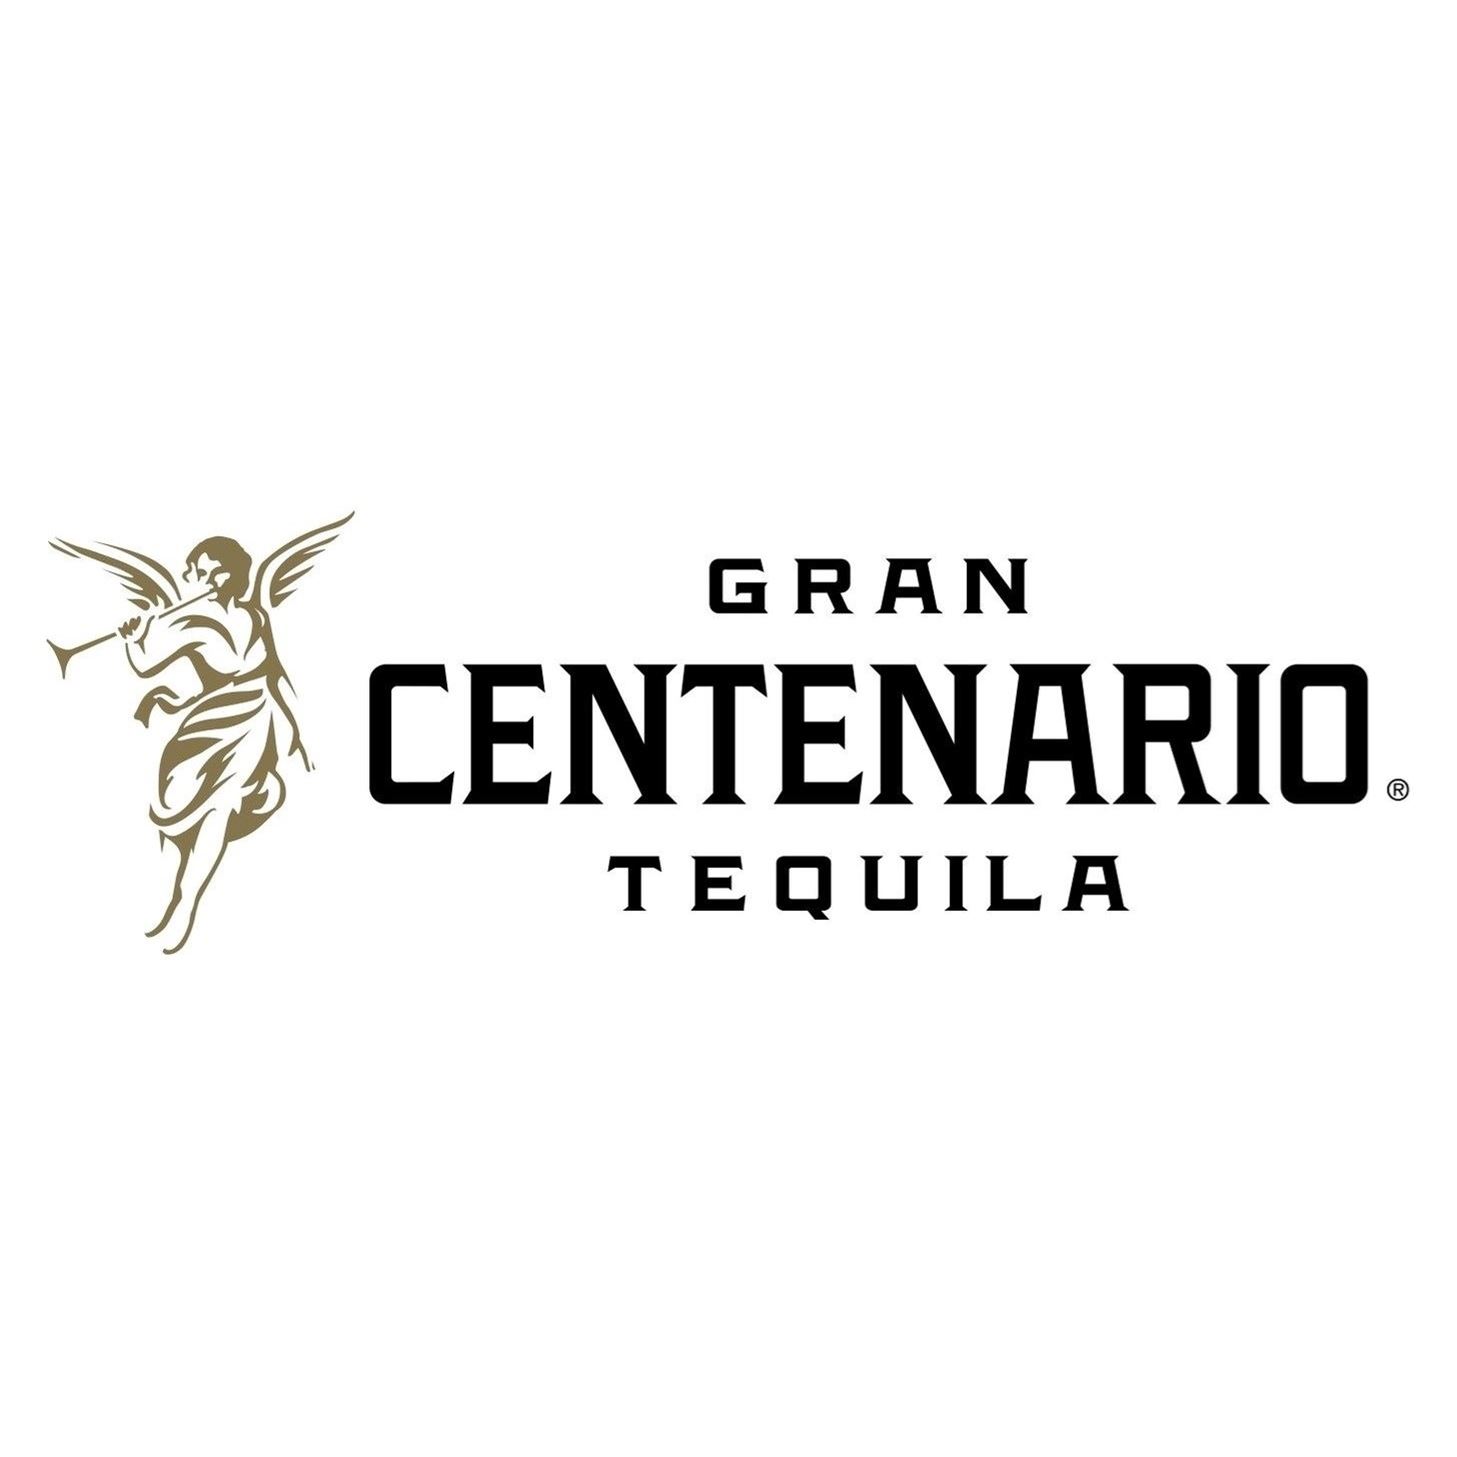 Grand Centenario